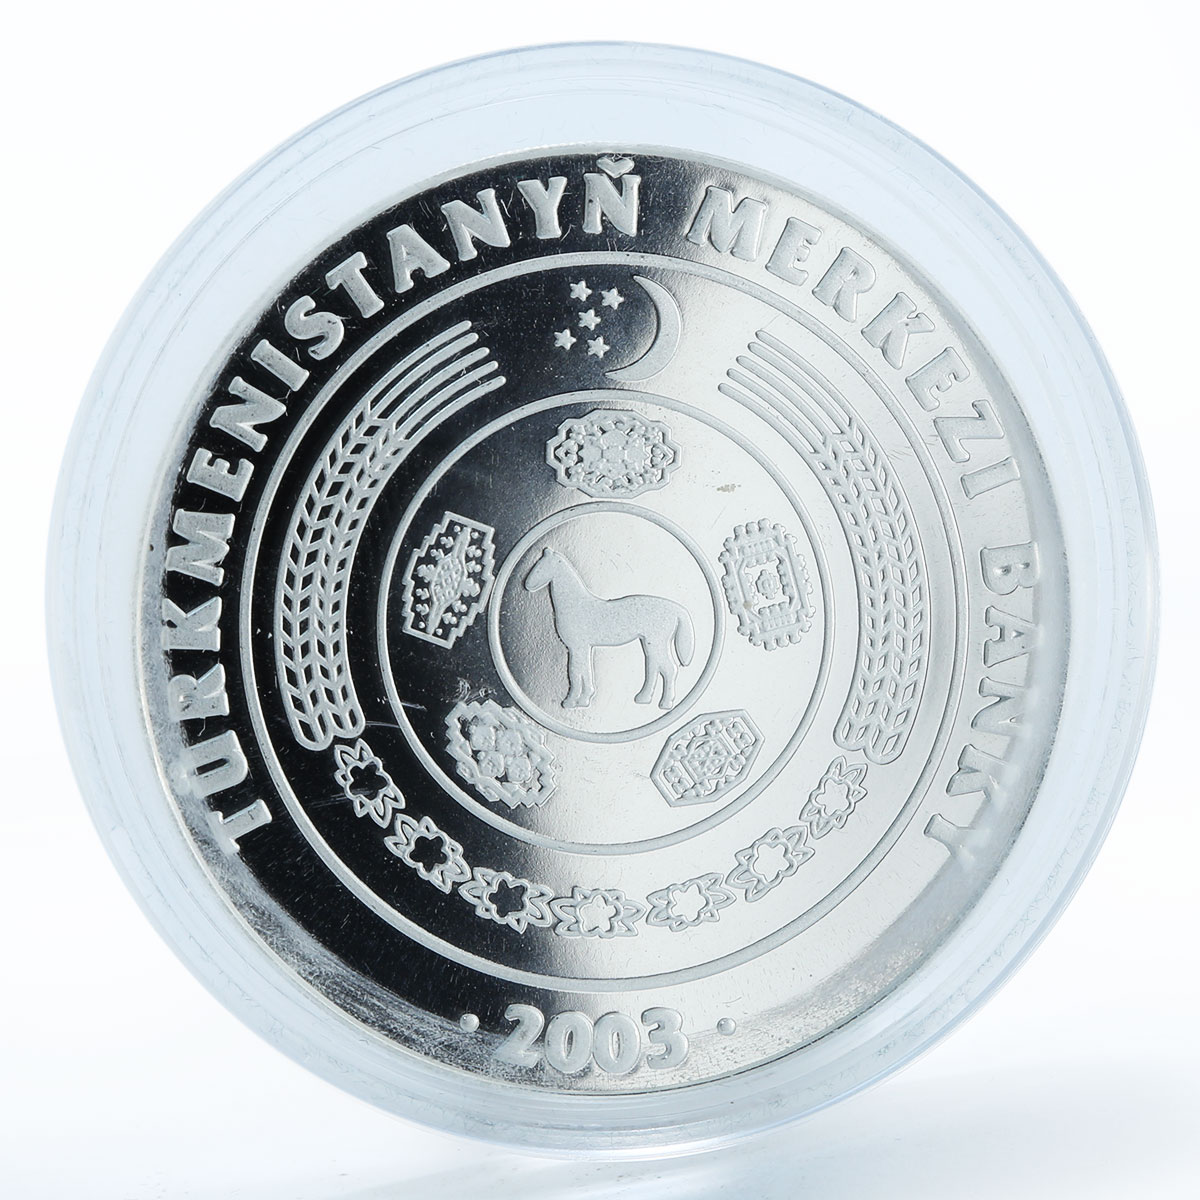 Turkmenistan 500 manat Great Turkmen Poet Gurbandurdy silver proof coin 2003